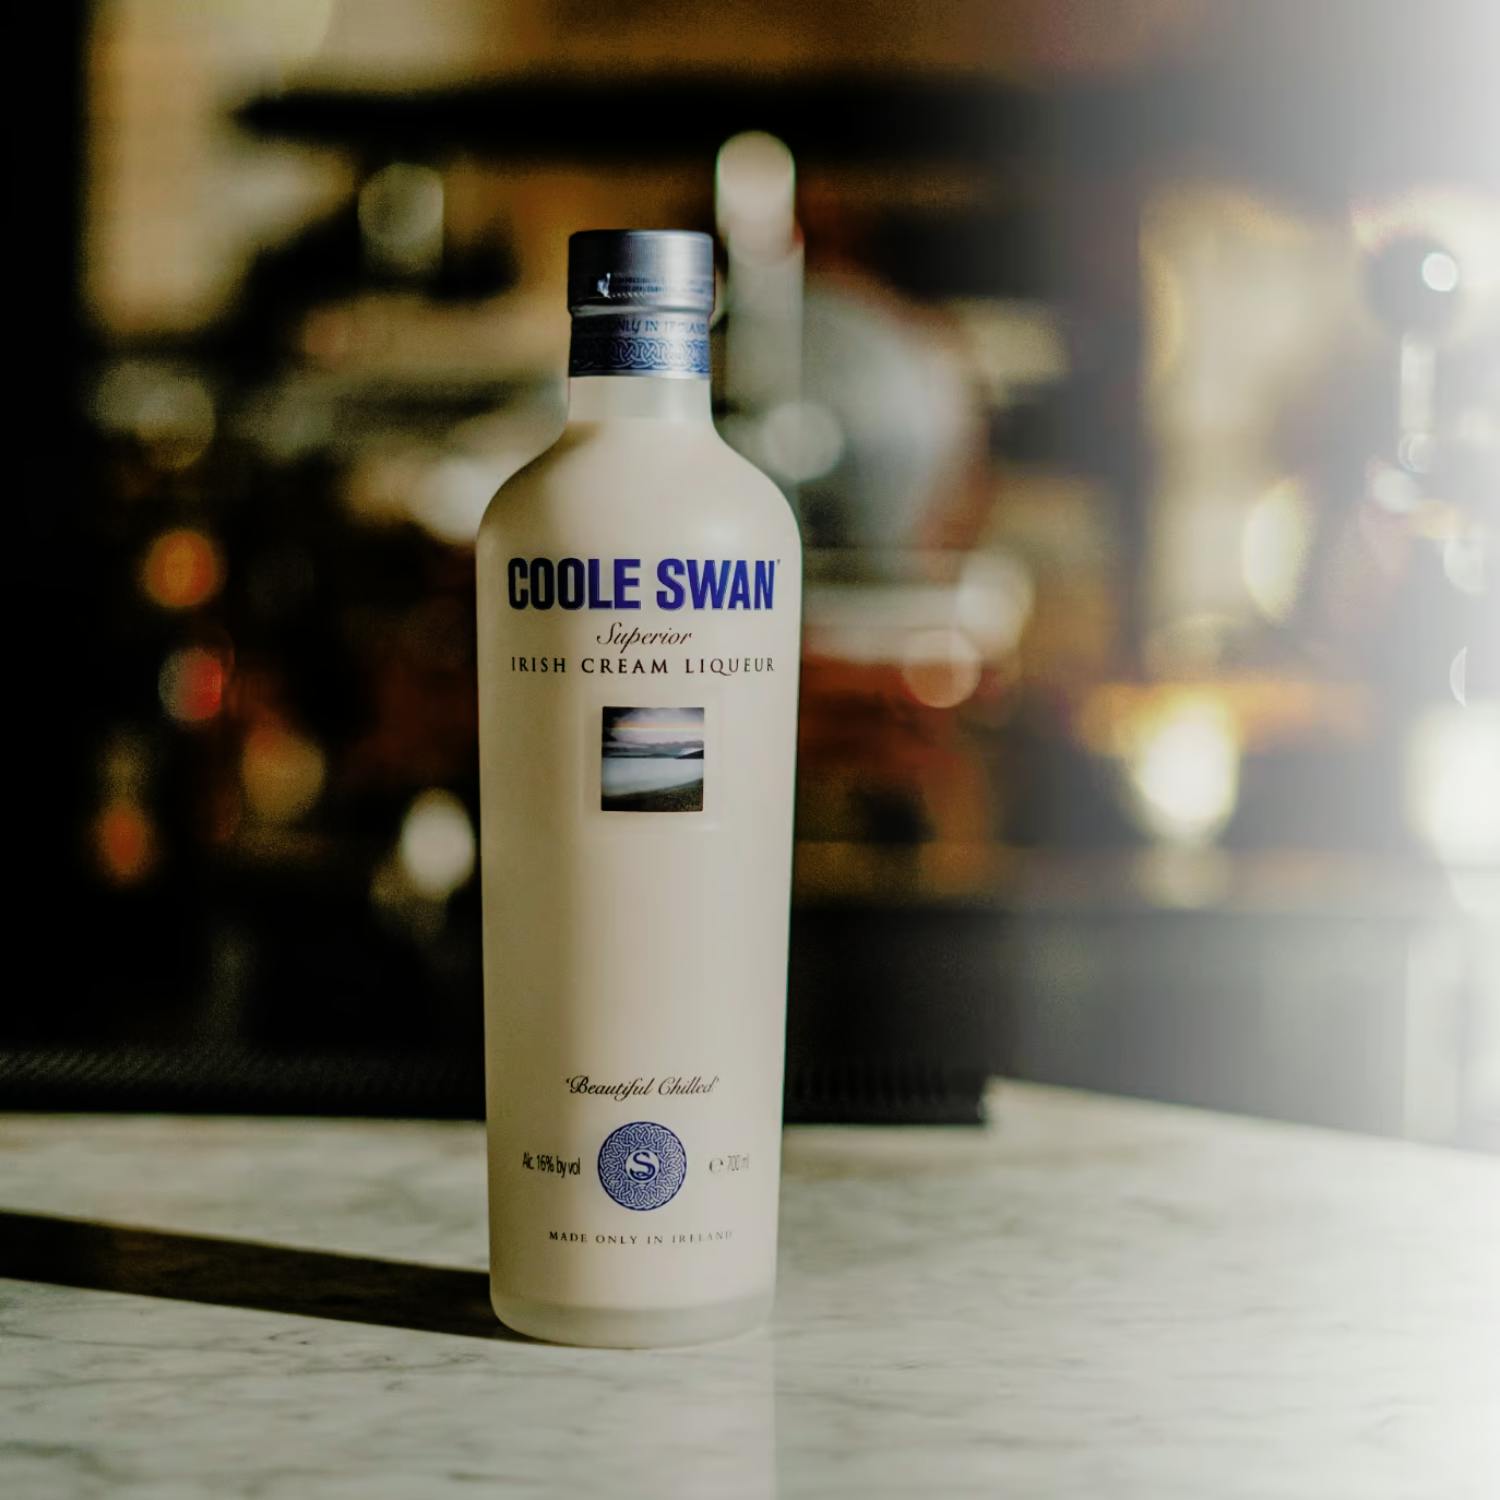 'Number one Irish Cream Liqueur’ Coole Swan